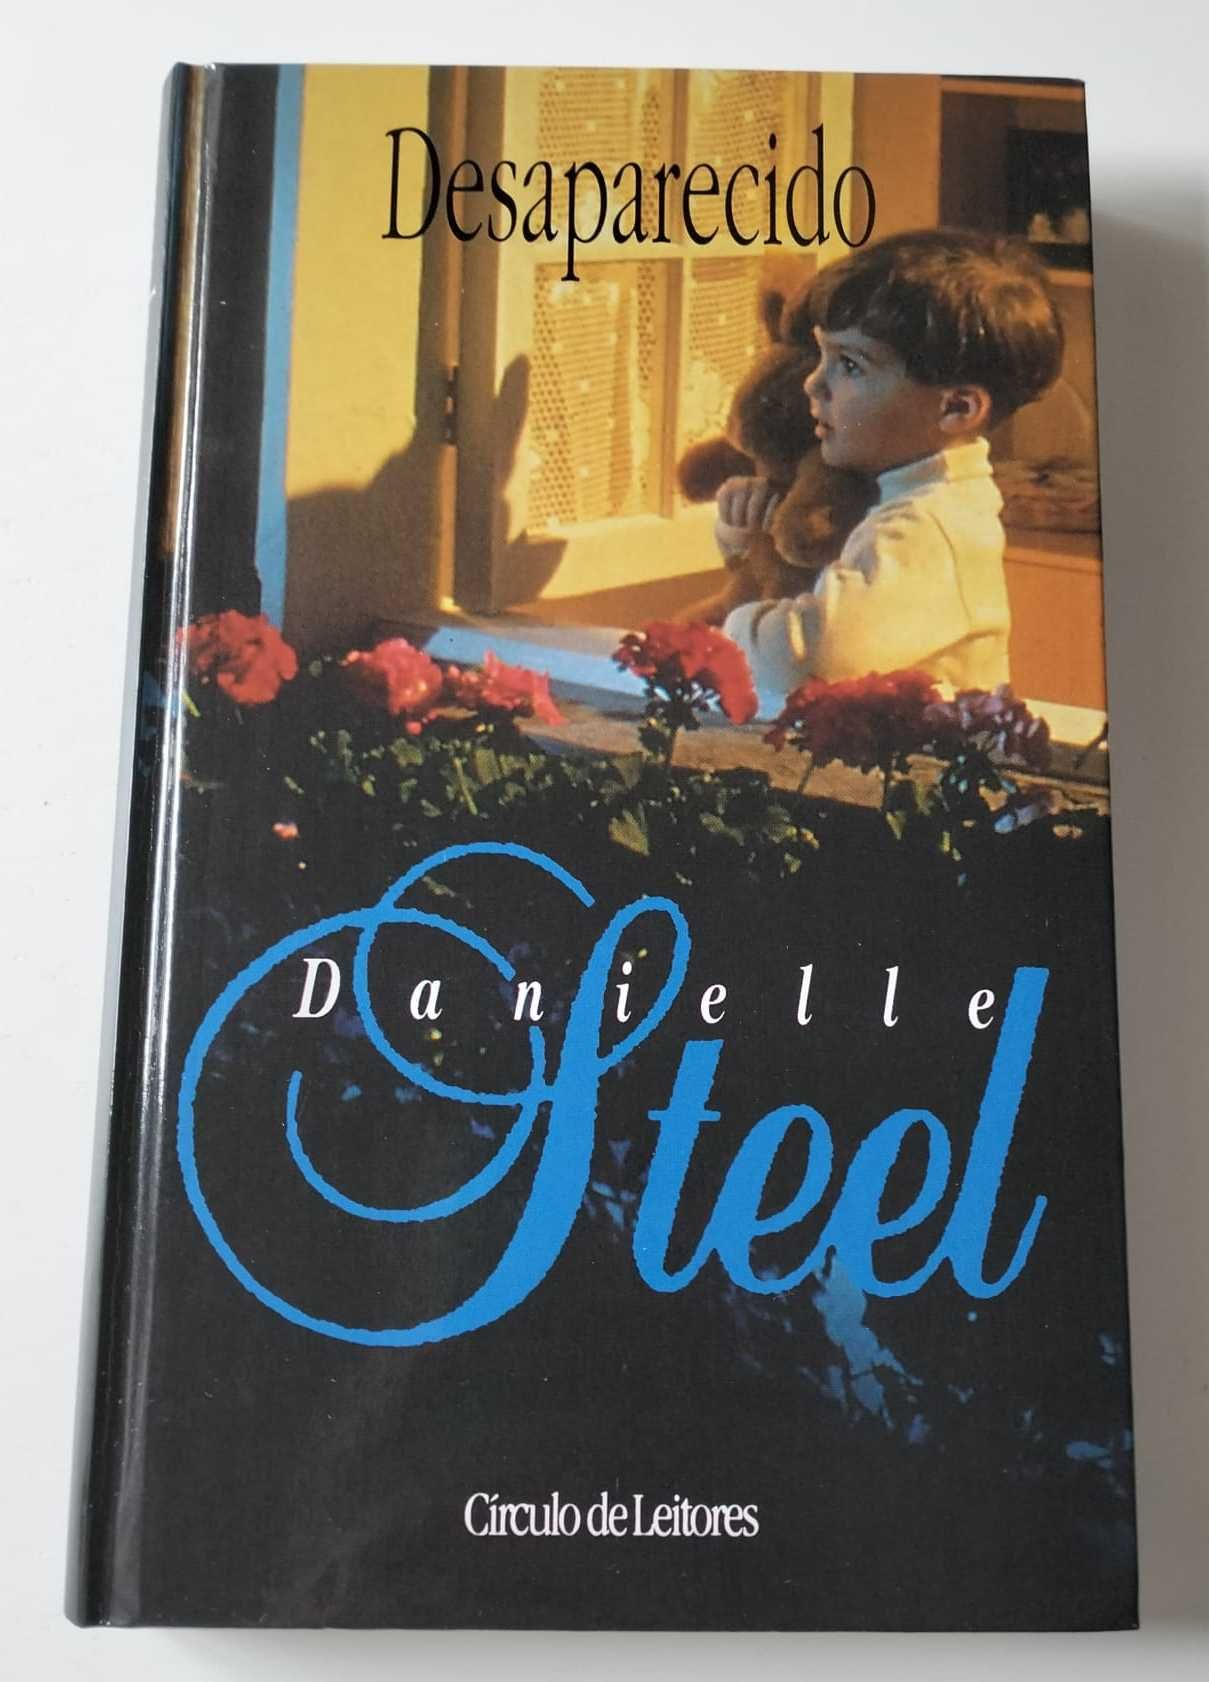 Livro "Desaparecido" - Danielle Steel